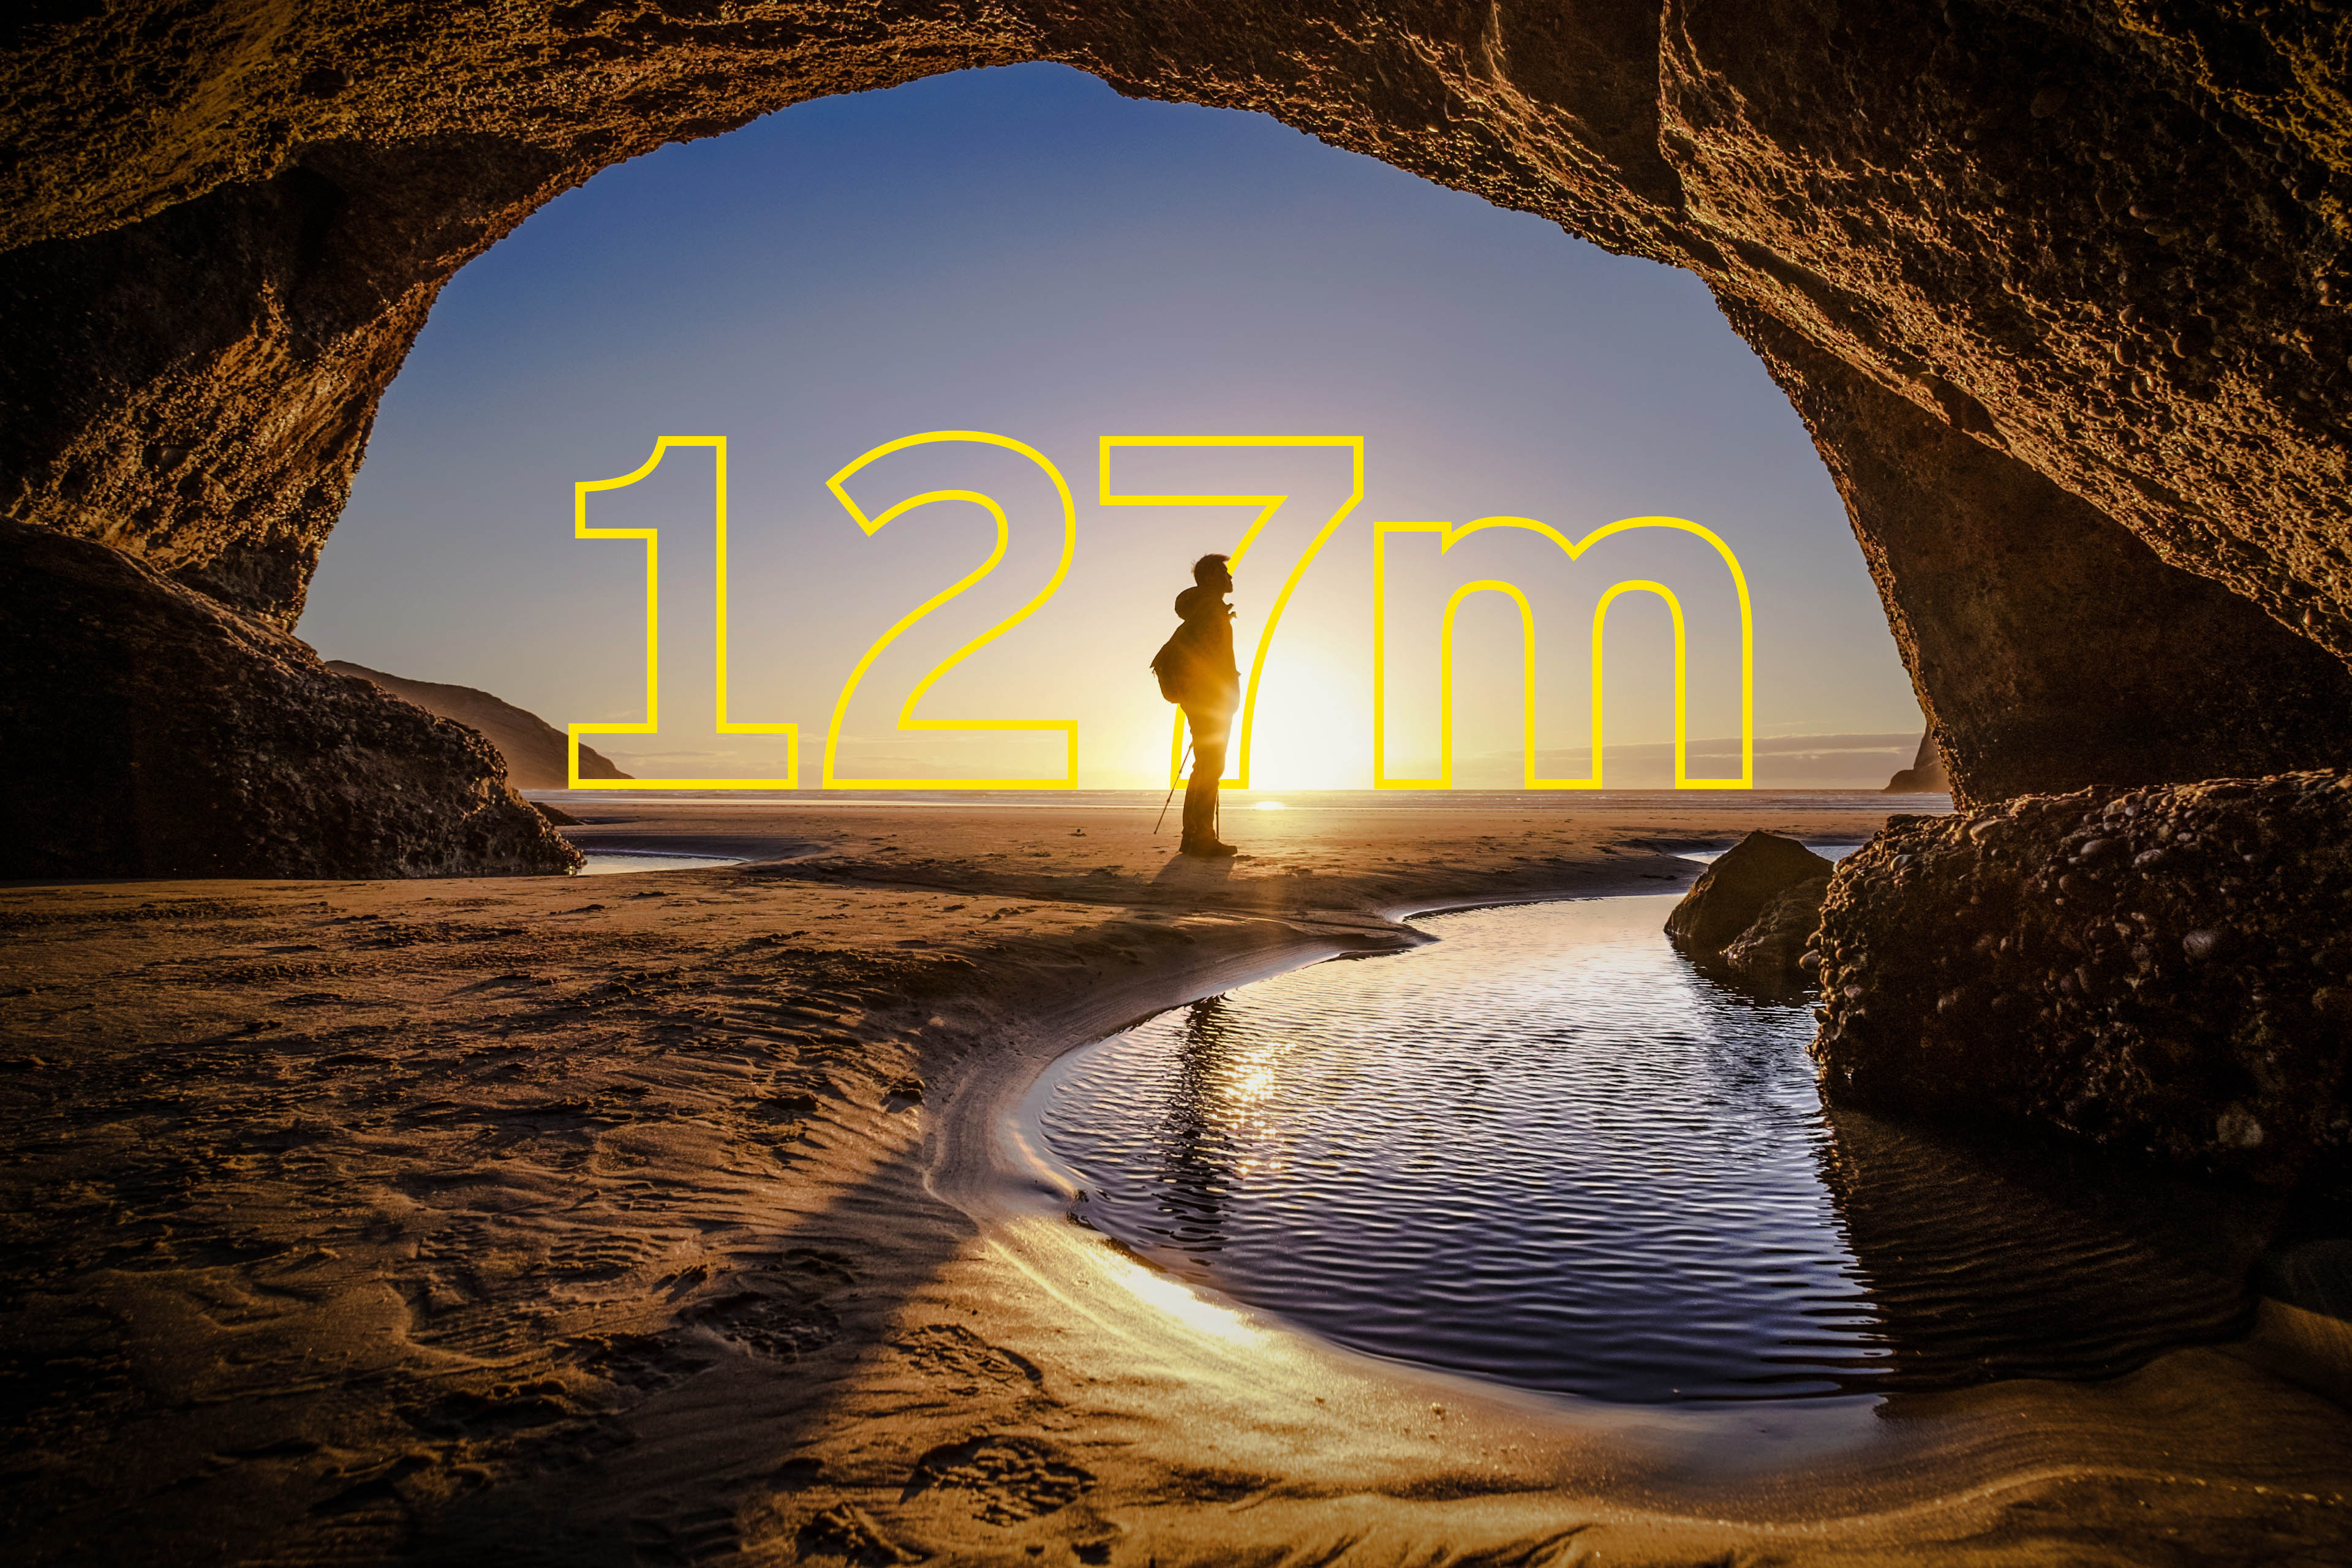 Jovem está na saída de uma caverna na Nova Zelândia - sobreposto há um texto amarelo dizendo 127m